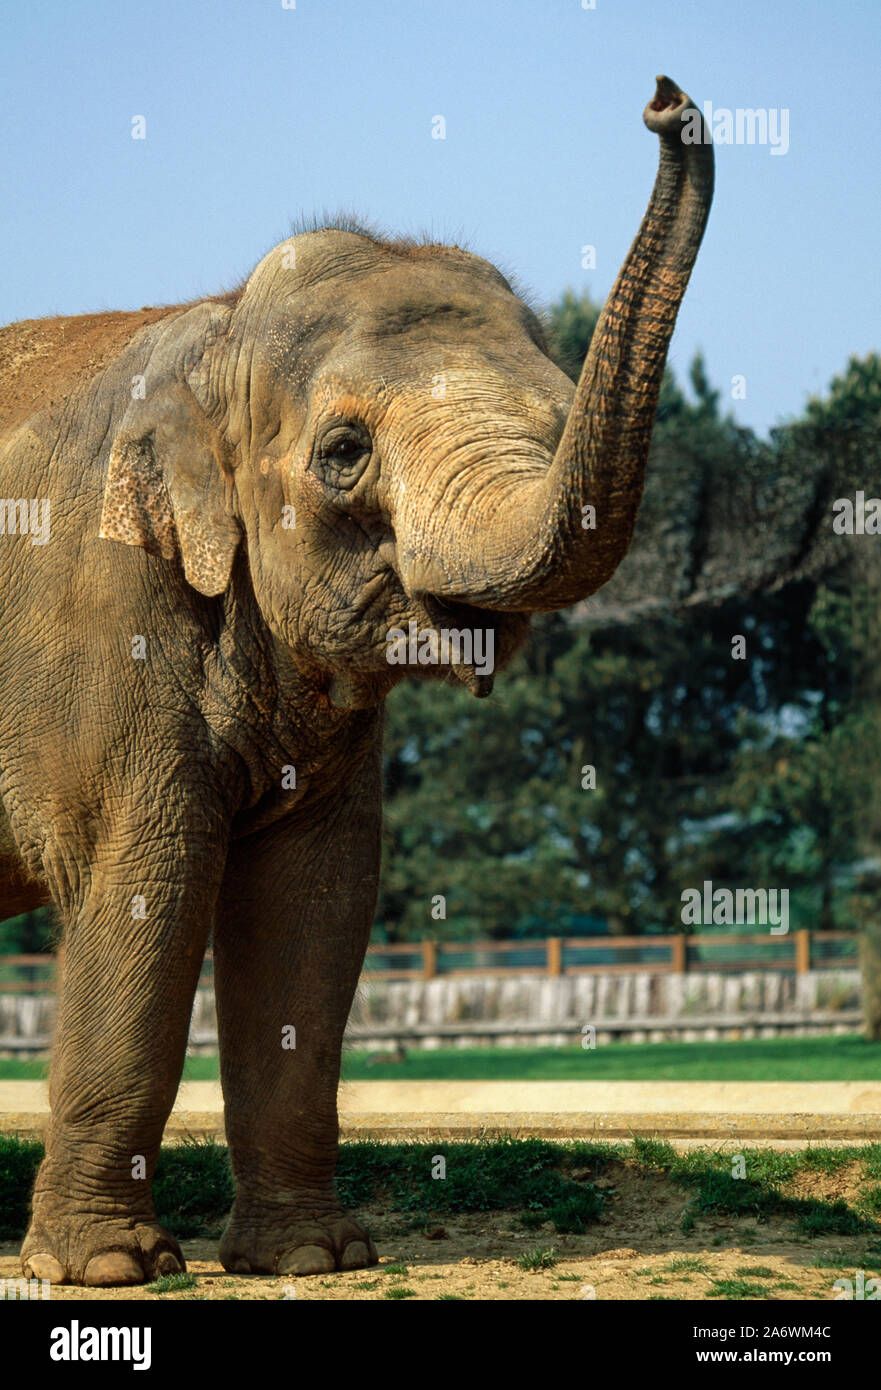 L'éléphant indien ou asiatique, close-up (Elephas maximus), montrant les espèces trunk astuce et de petites oreilles. Des animaux en captivité, en agitant un soulevé de réseau. Banque D'Images